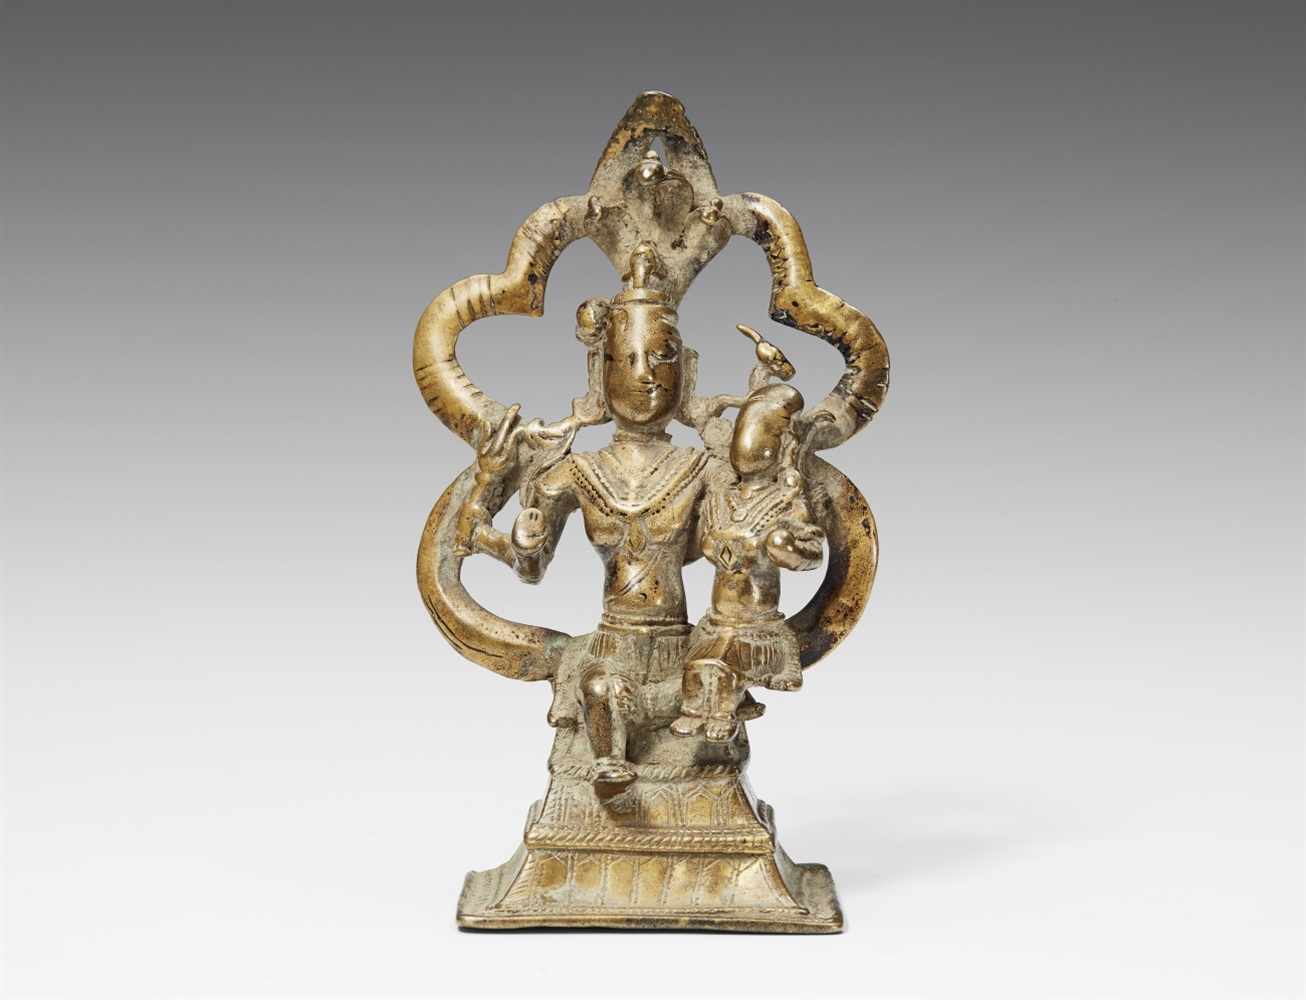 Shiva und Parvati. Messingfarbene Bronze. Nordostindien. 14./16. Jh. Der vierarmige Shiva, umgeben